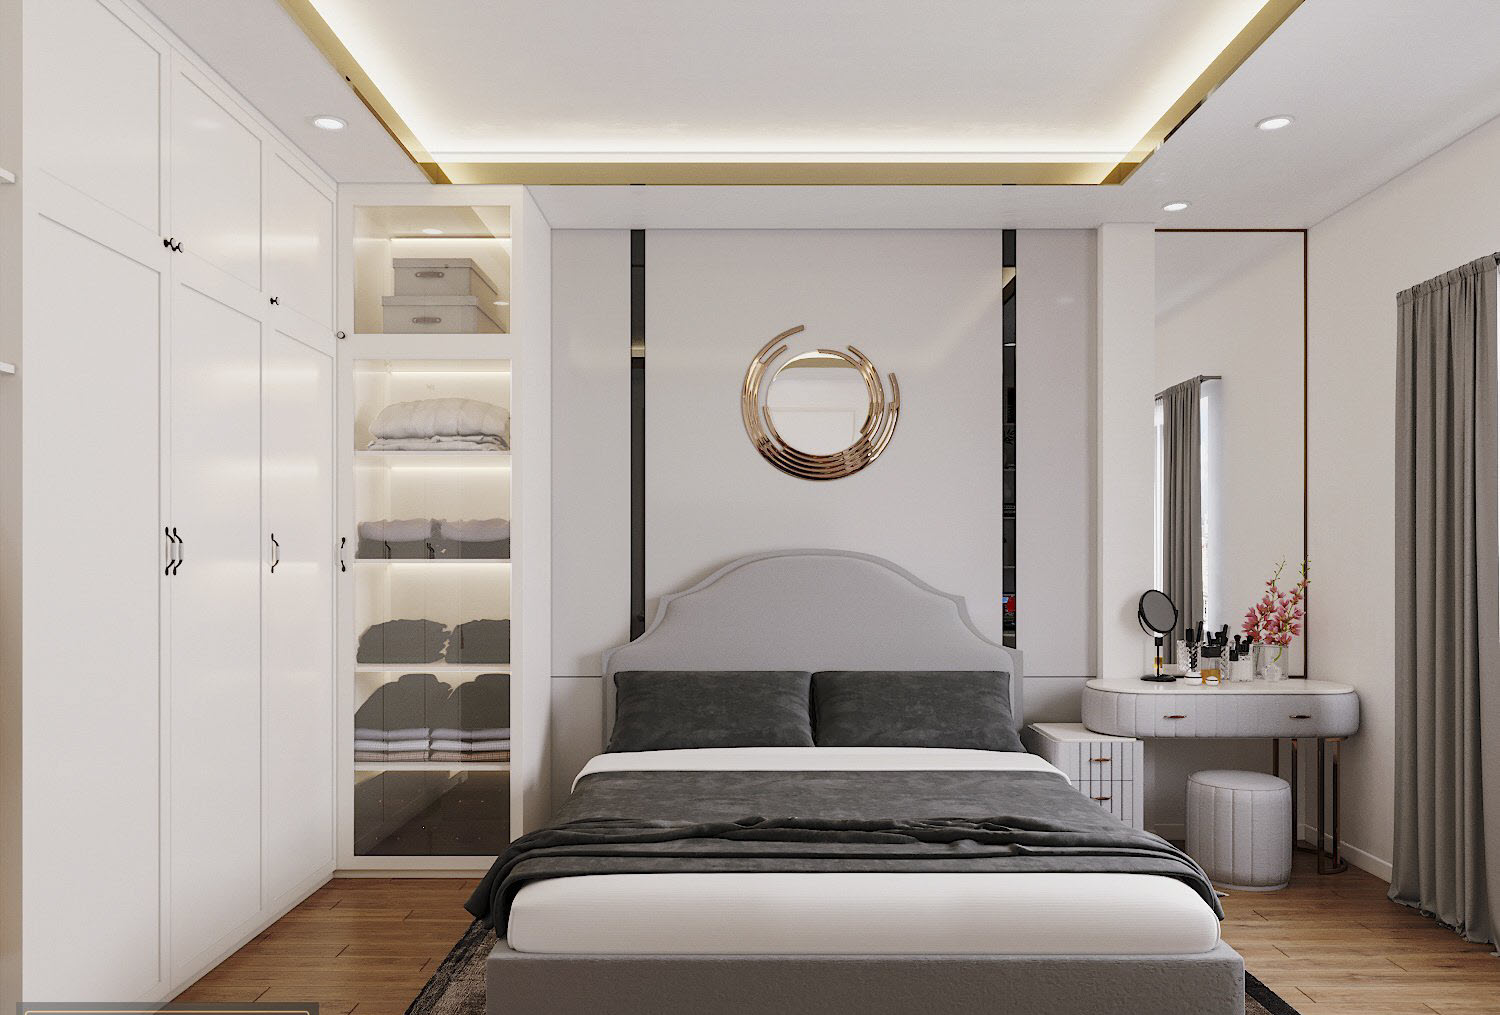 Một phòng ngủ khác với thiết kế nội thất và bảng màu tương tự. Gương lớn vừ tủ kính giúp hút sáng tự nhiên, mang lại cảm giác rộng rãi hơn về mặt thị giác.